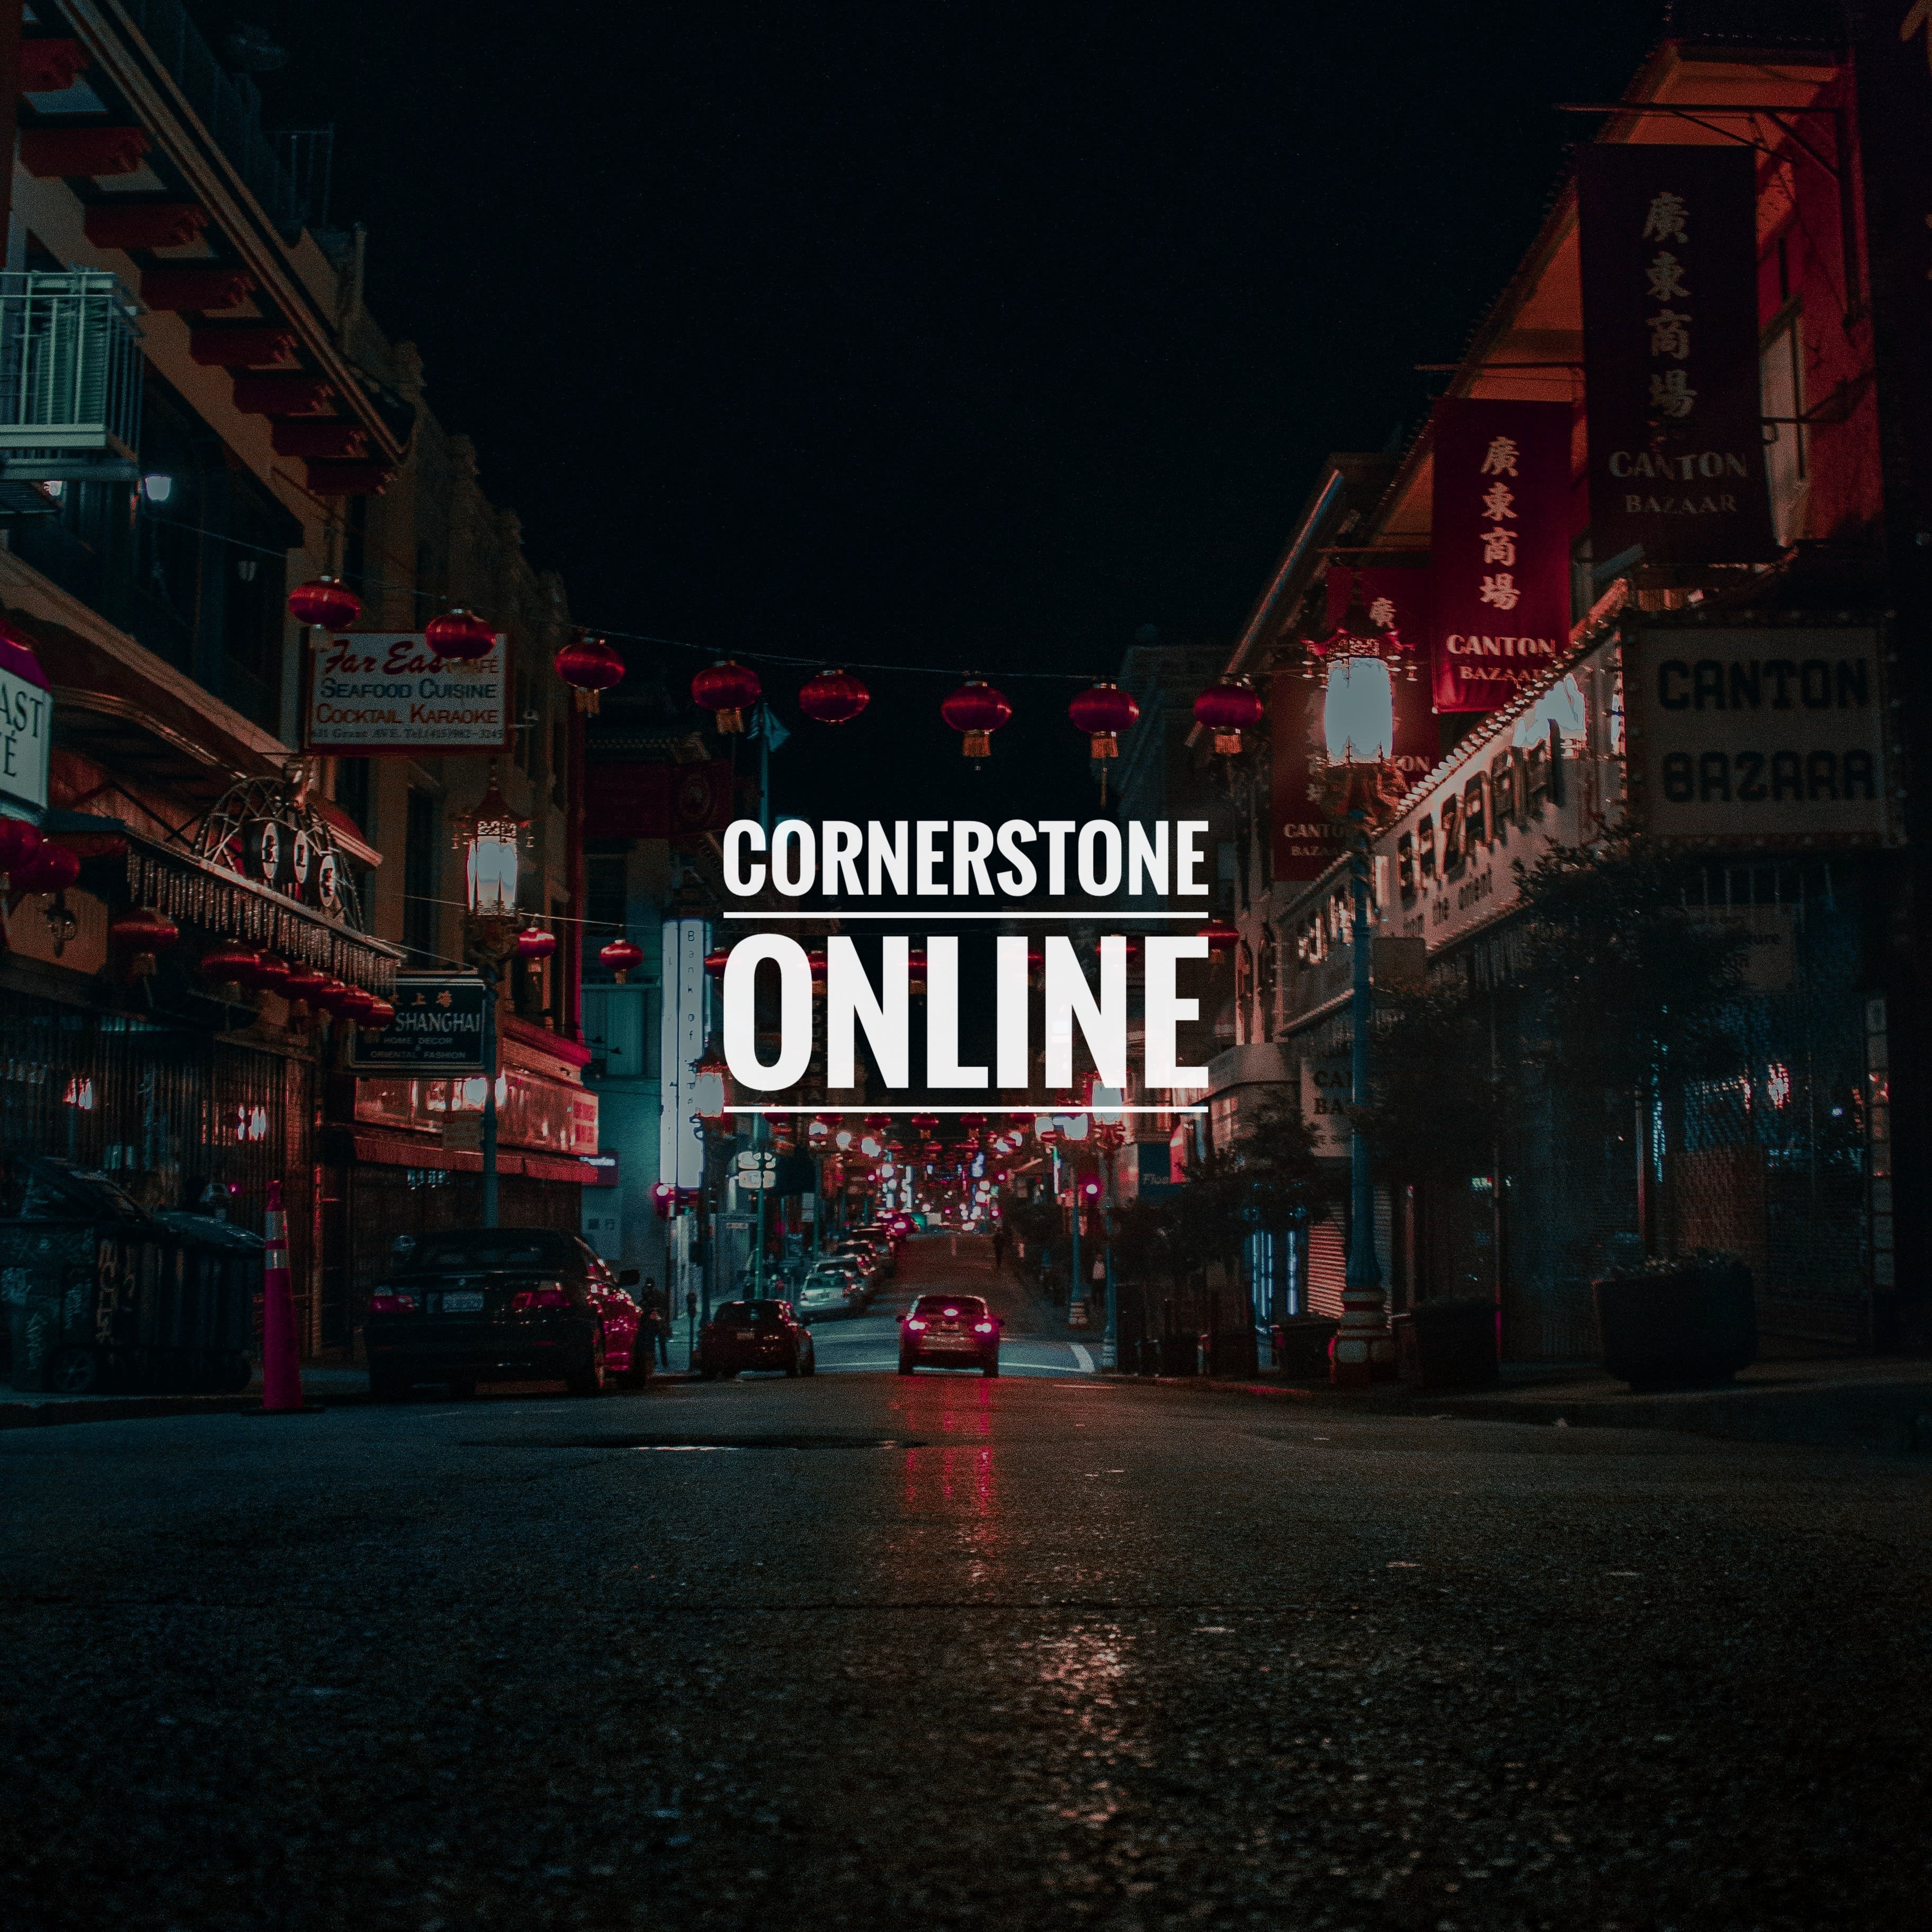 Cornerstone Online